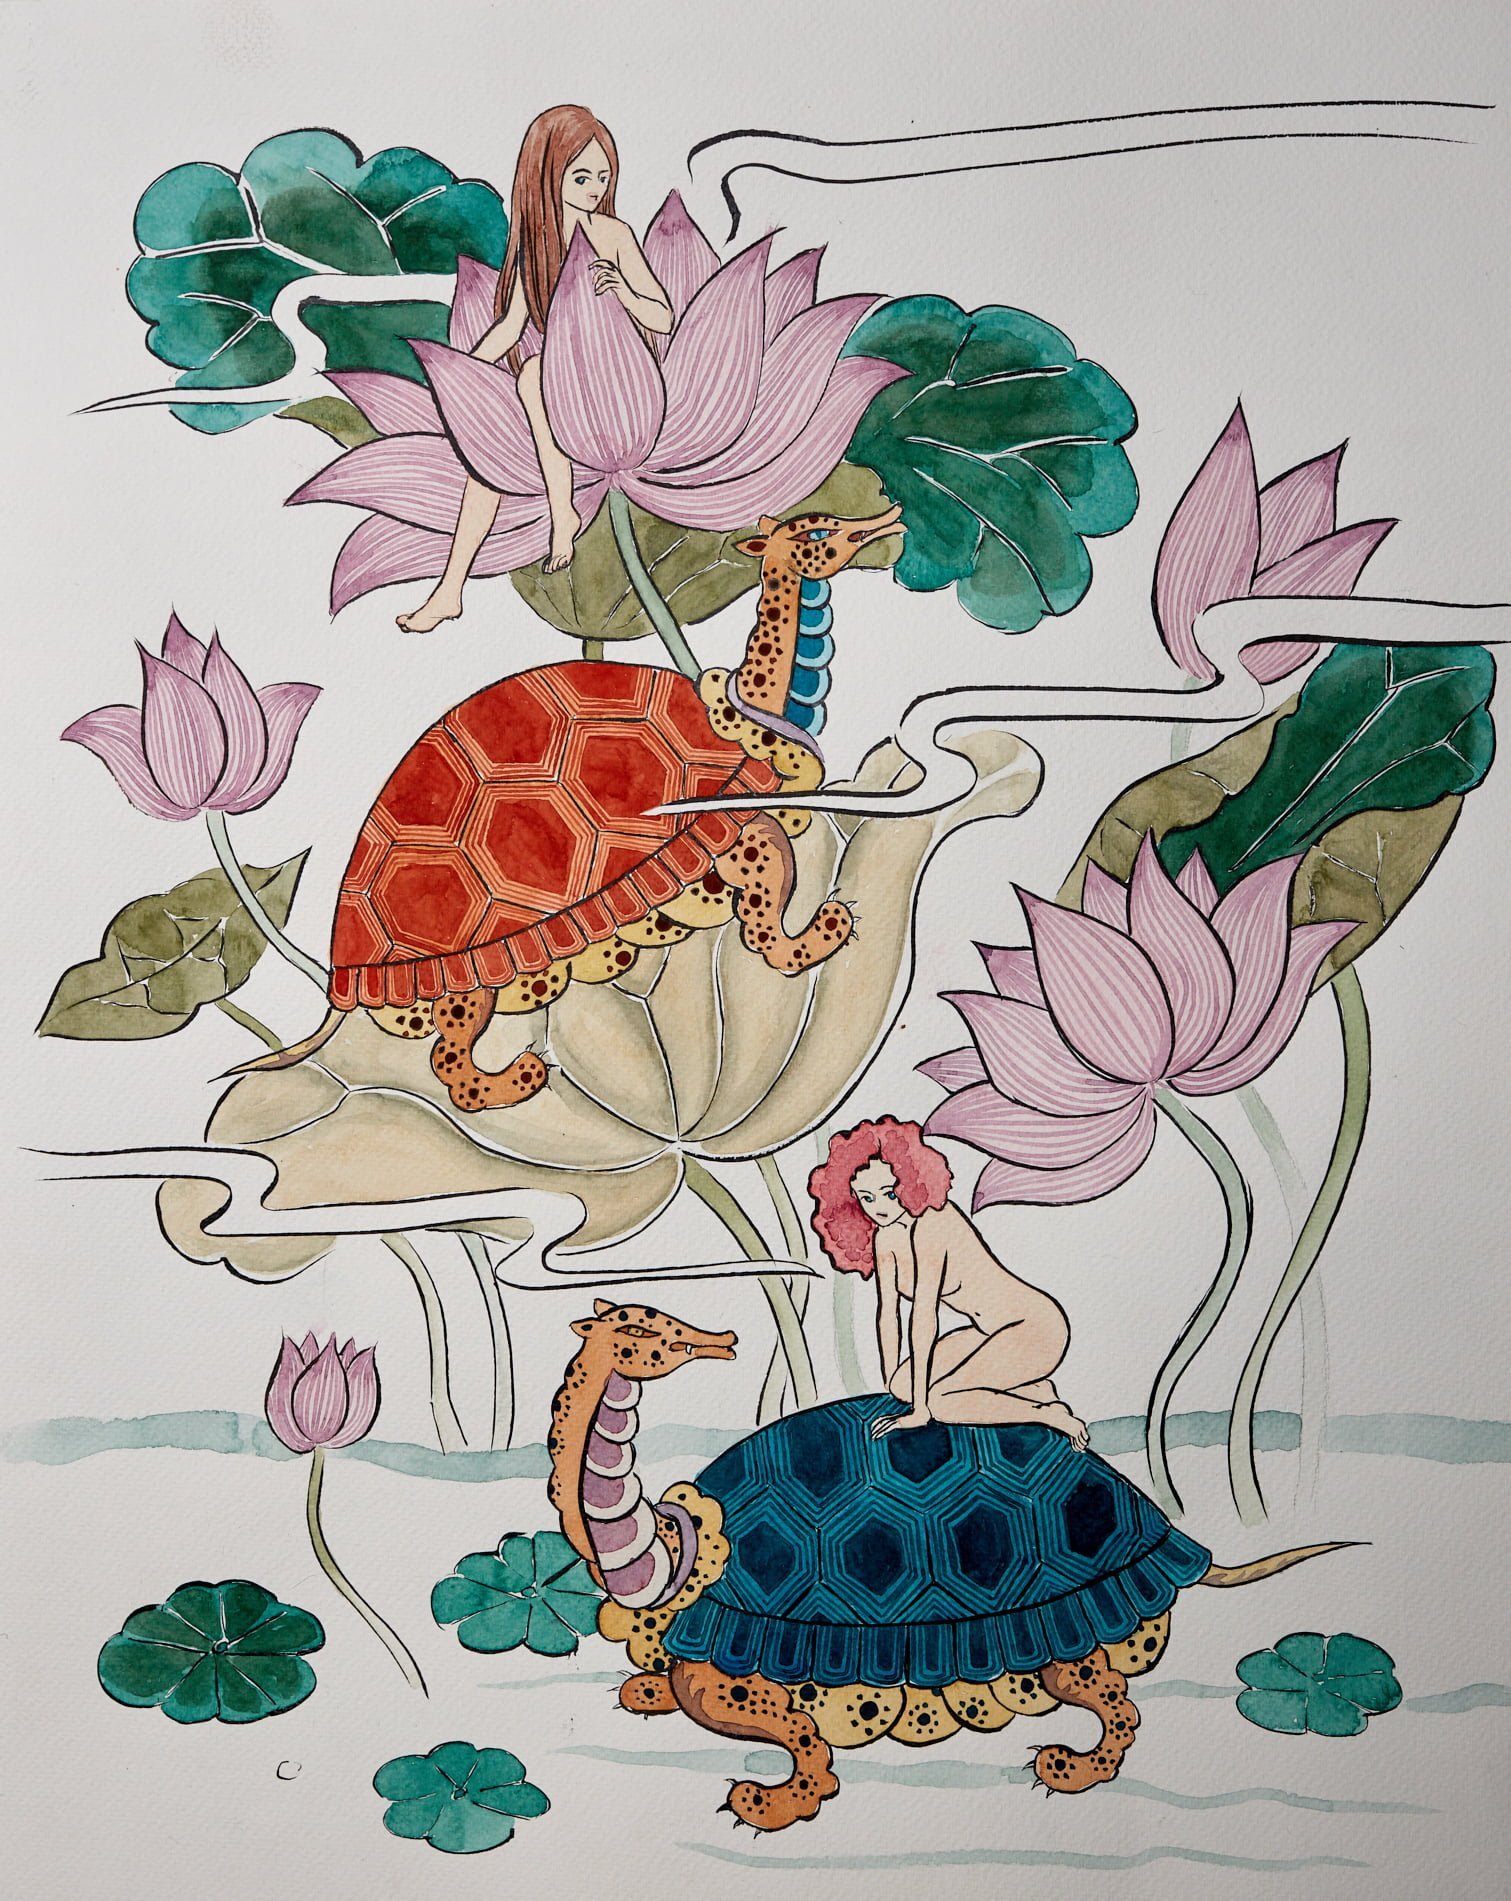 Lotus Turtles by Sung Lee